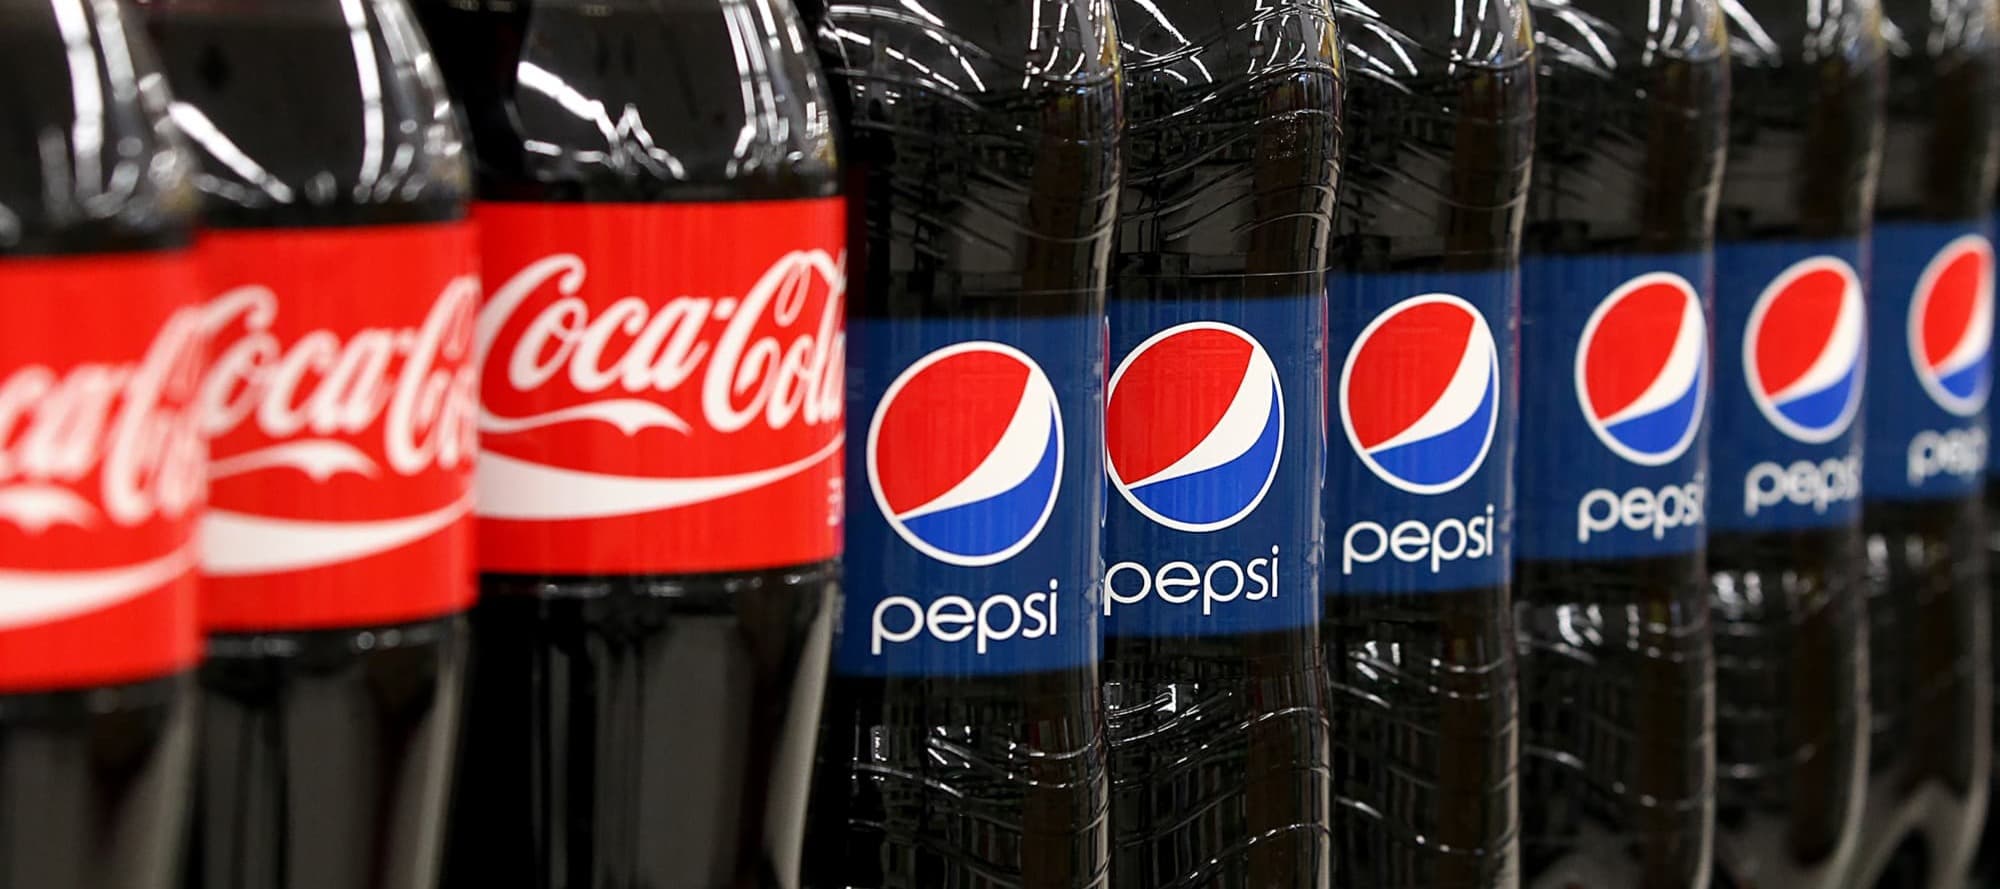 Фото новости: "Coca-Сola и Pepsi обеспечивали 60-70% продаж безалкогольных напитков в России"